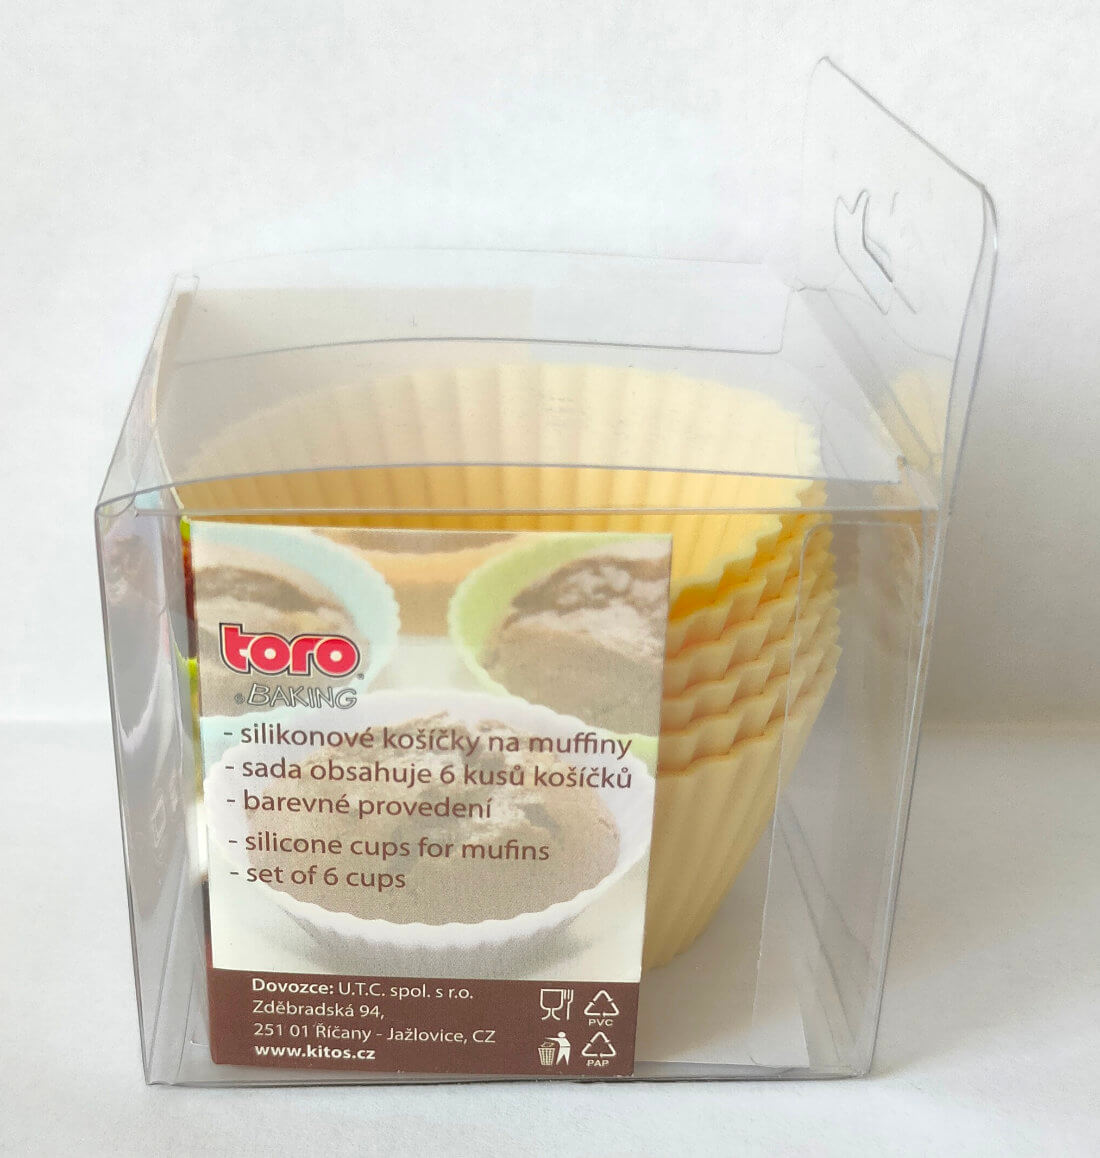 toro baking silikónové košíčky - obsah